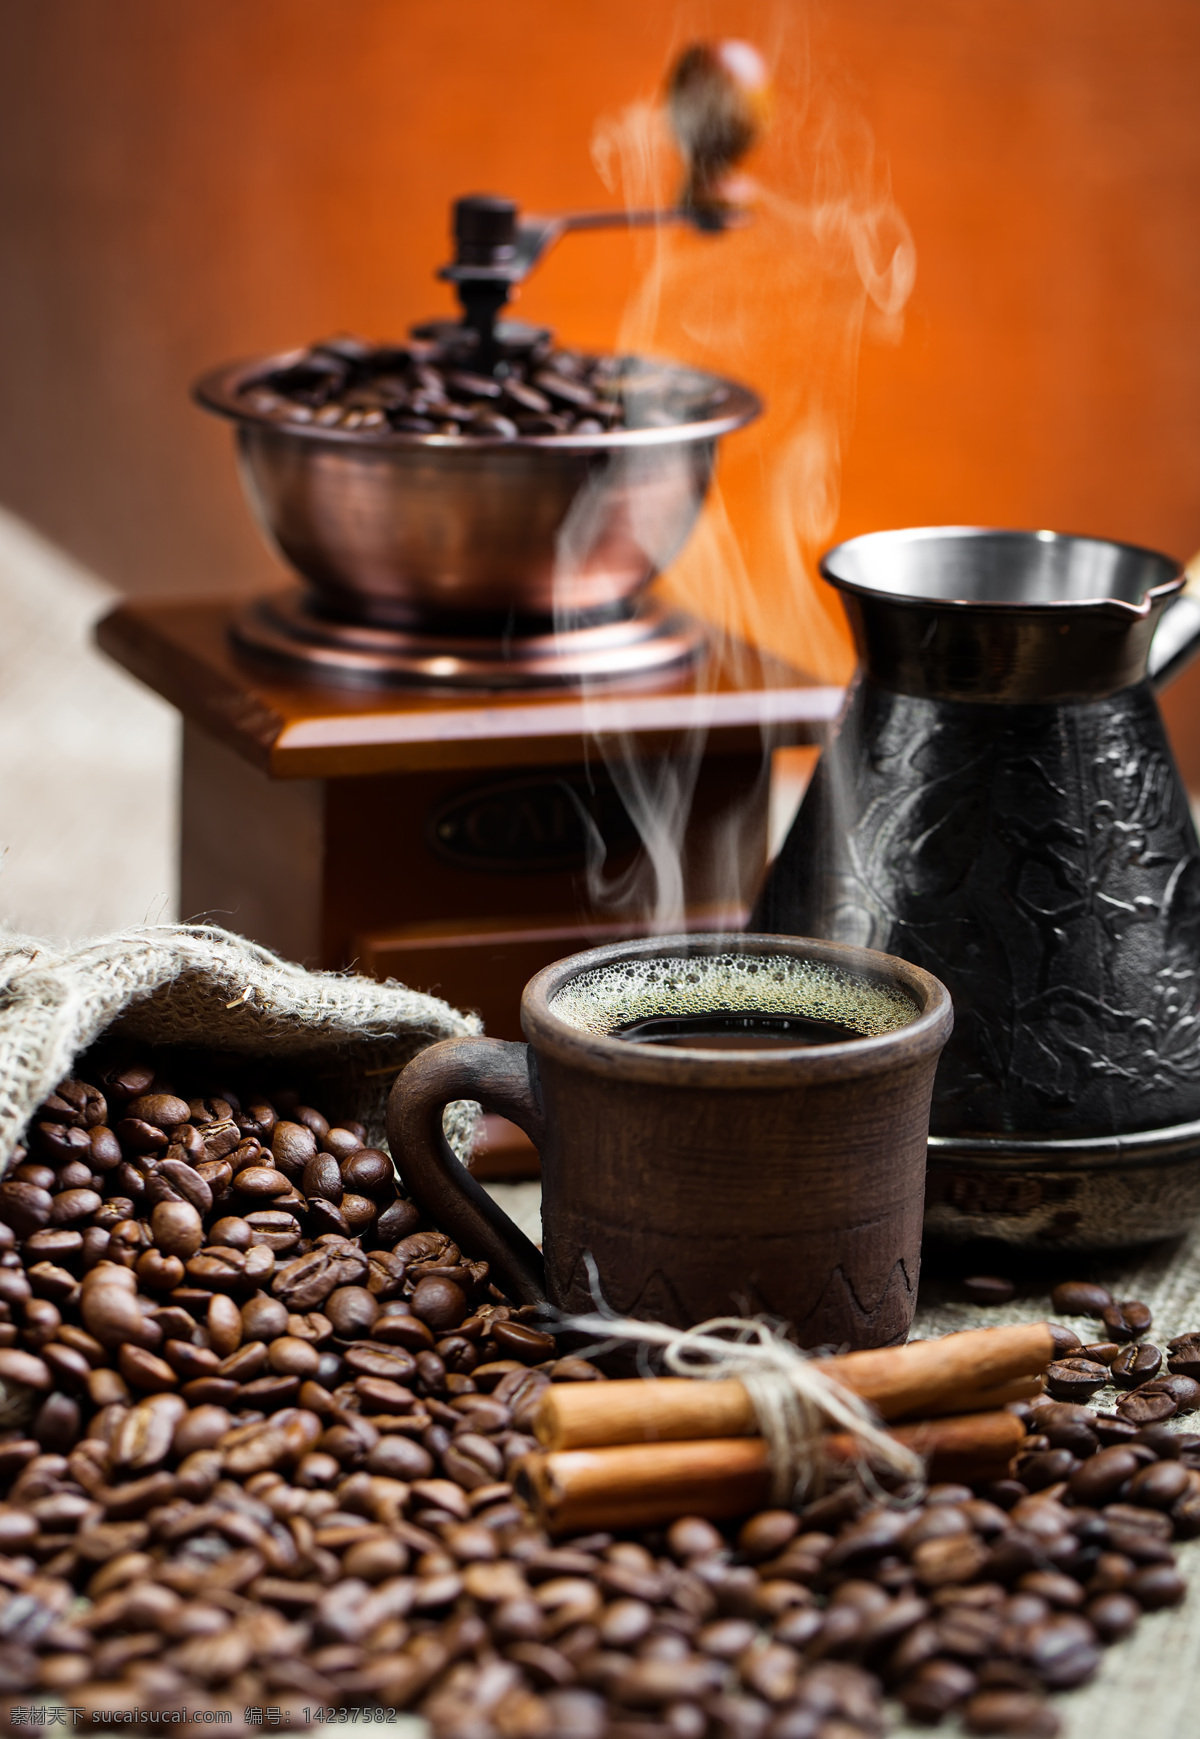 咖啡 研磨机 咖啡豆 咖啡研磨机 咖啡原料 咖啡摄影 咖啡杯子 其他类别 生活百科 黑色